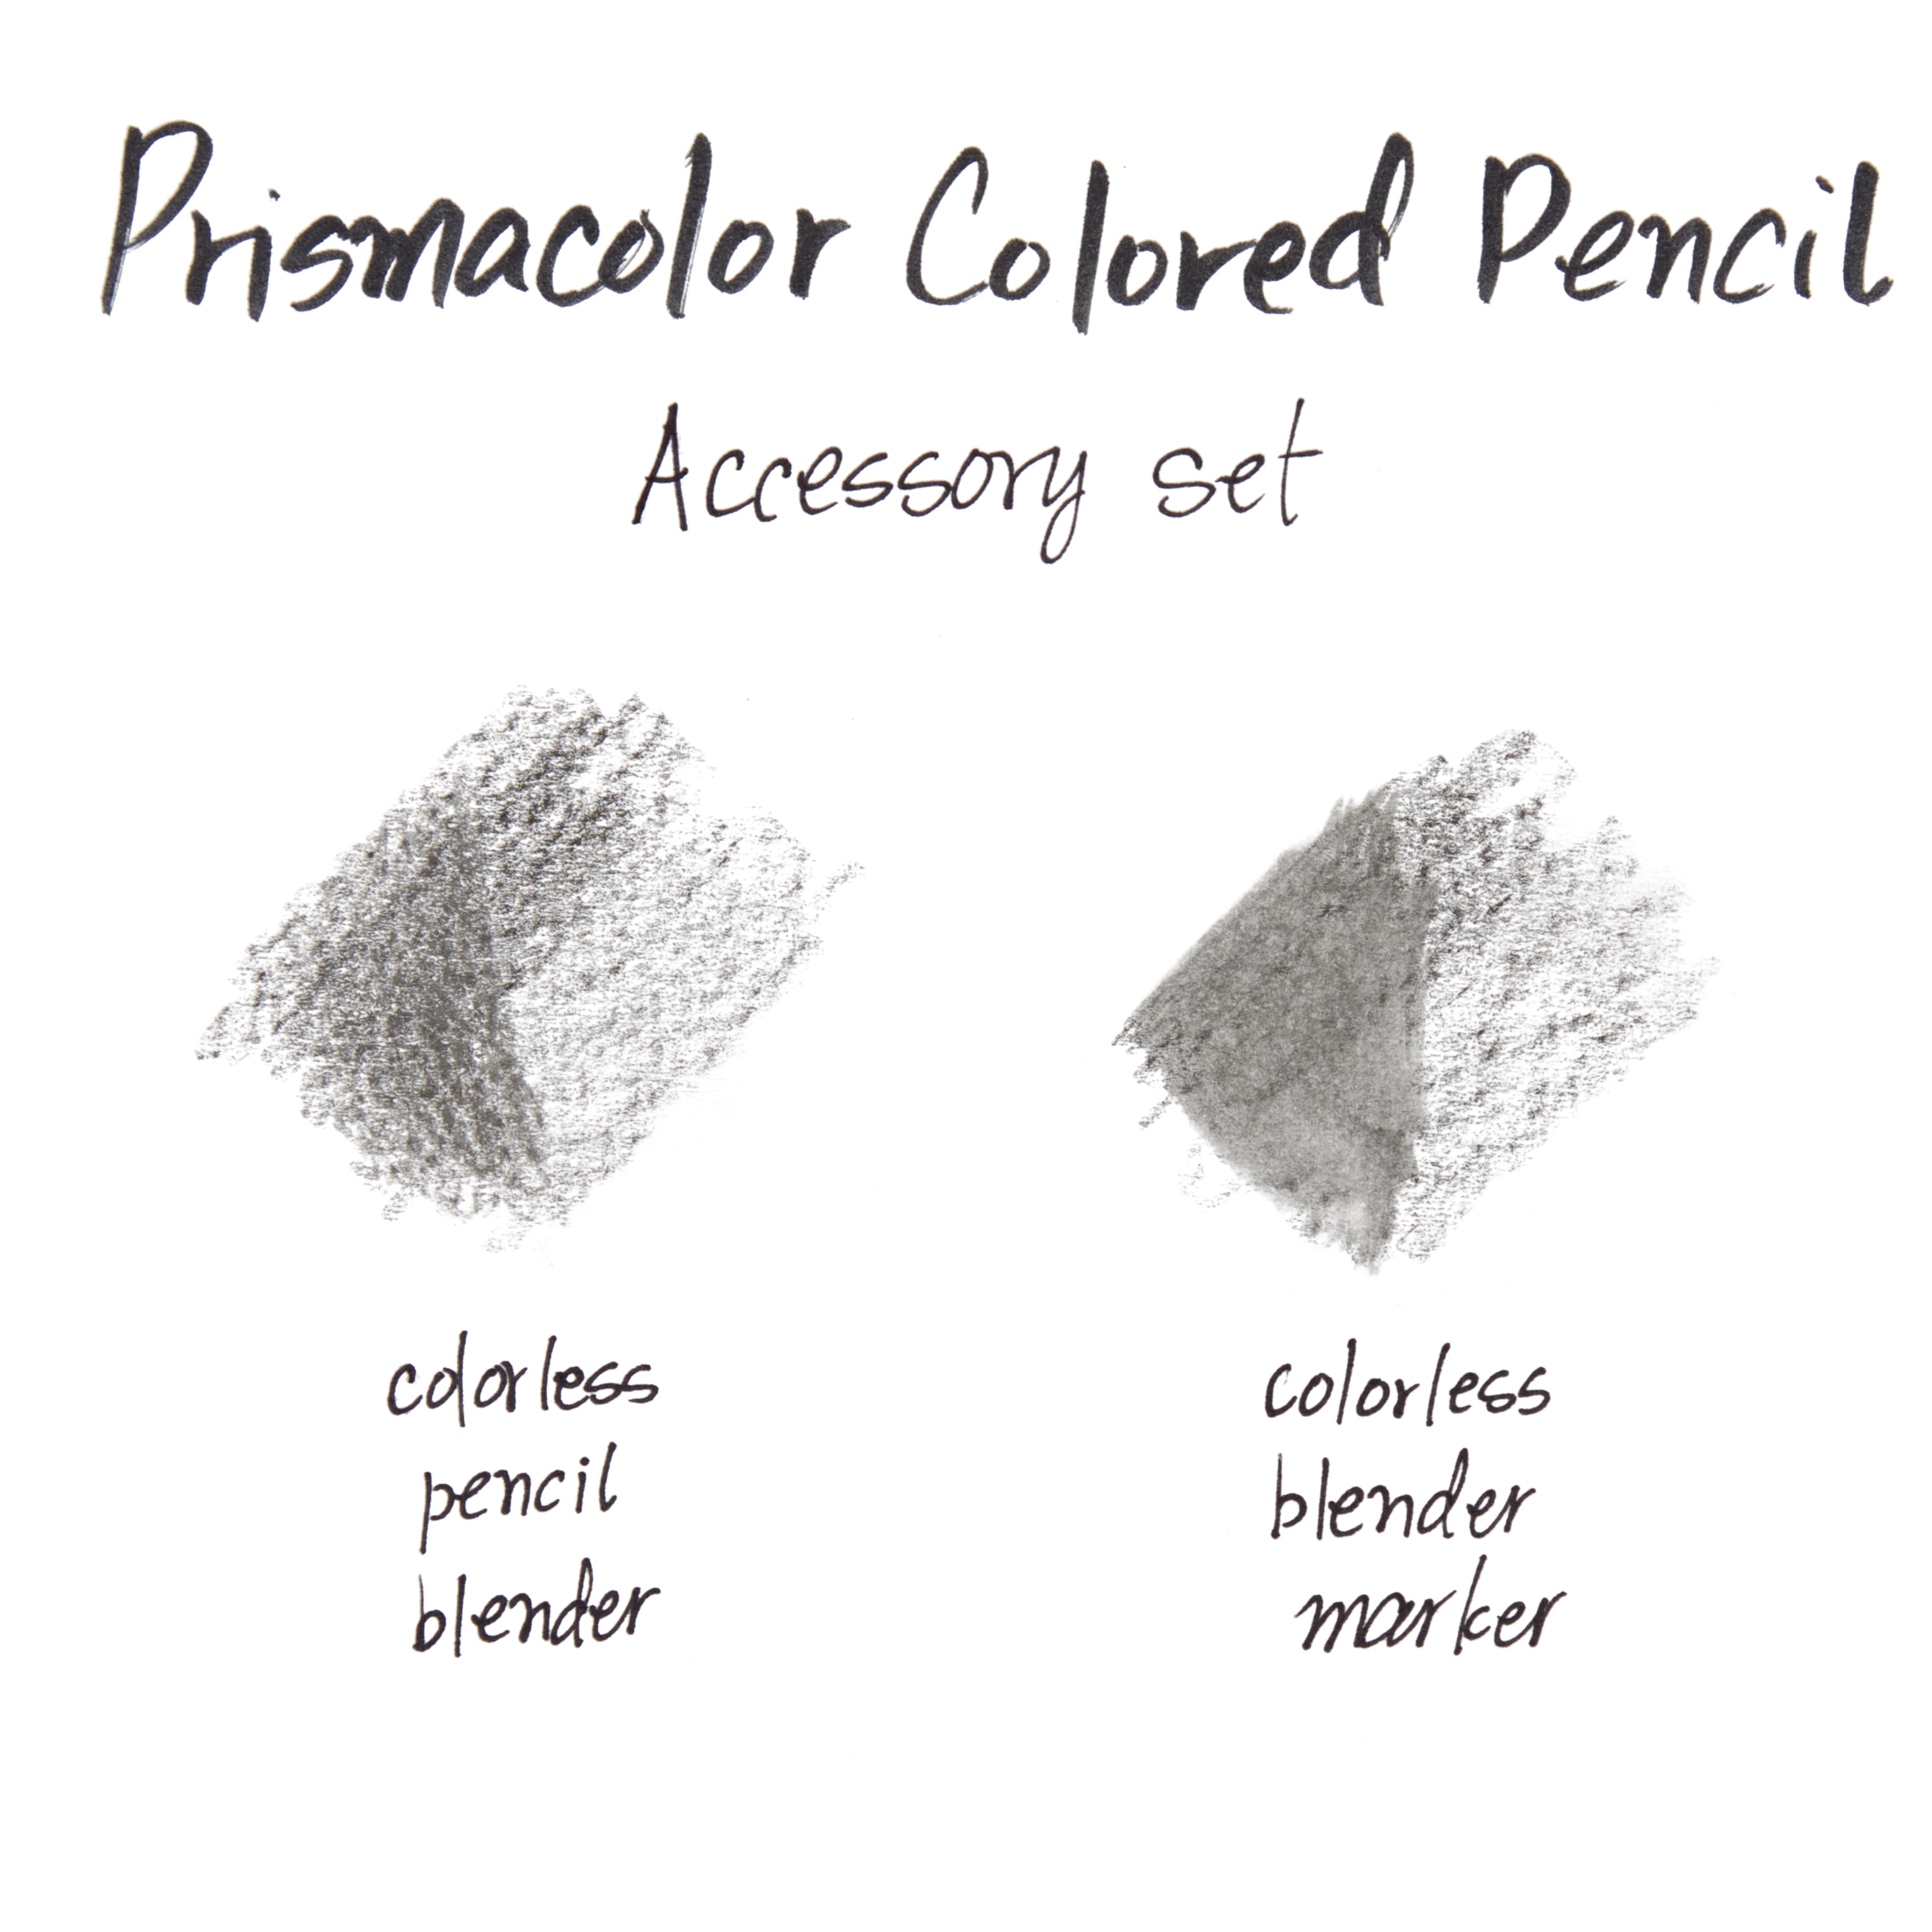 Prismacolor Scholar Eraser, Pencil Eraser Drawing, Blending, Shading &  Rendering, Prismacolor Arts Crafts 